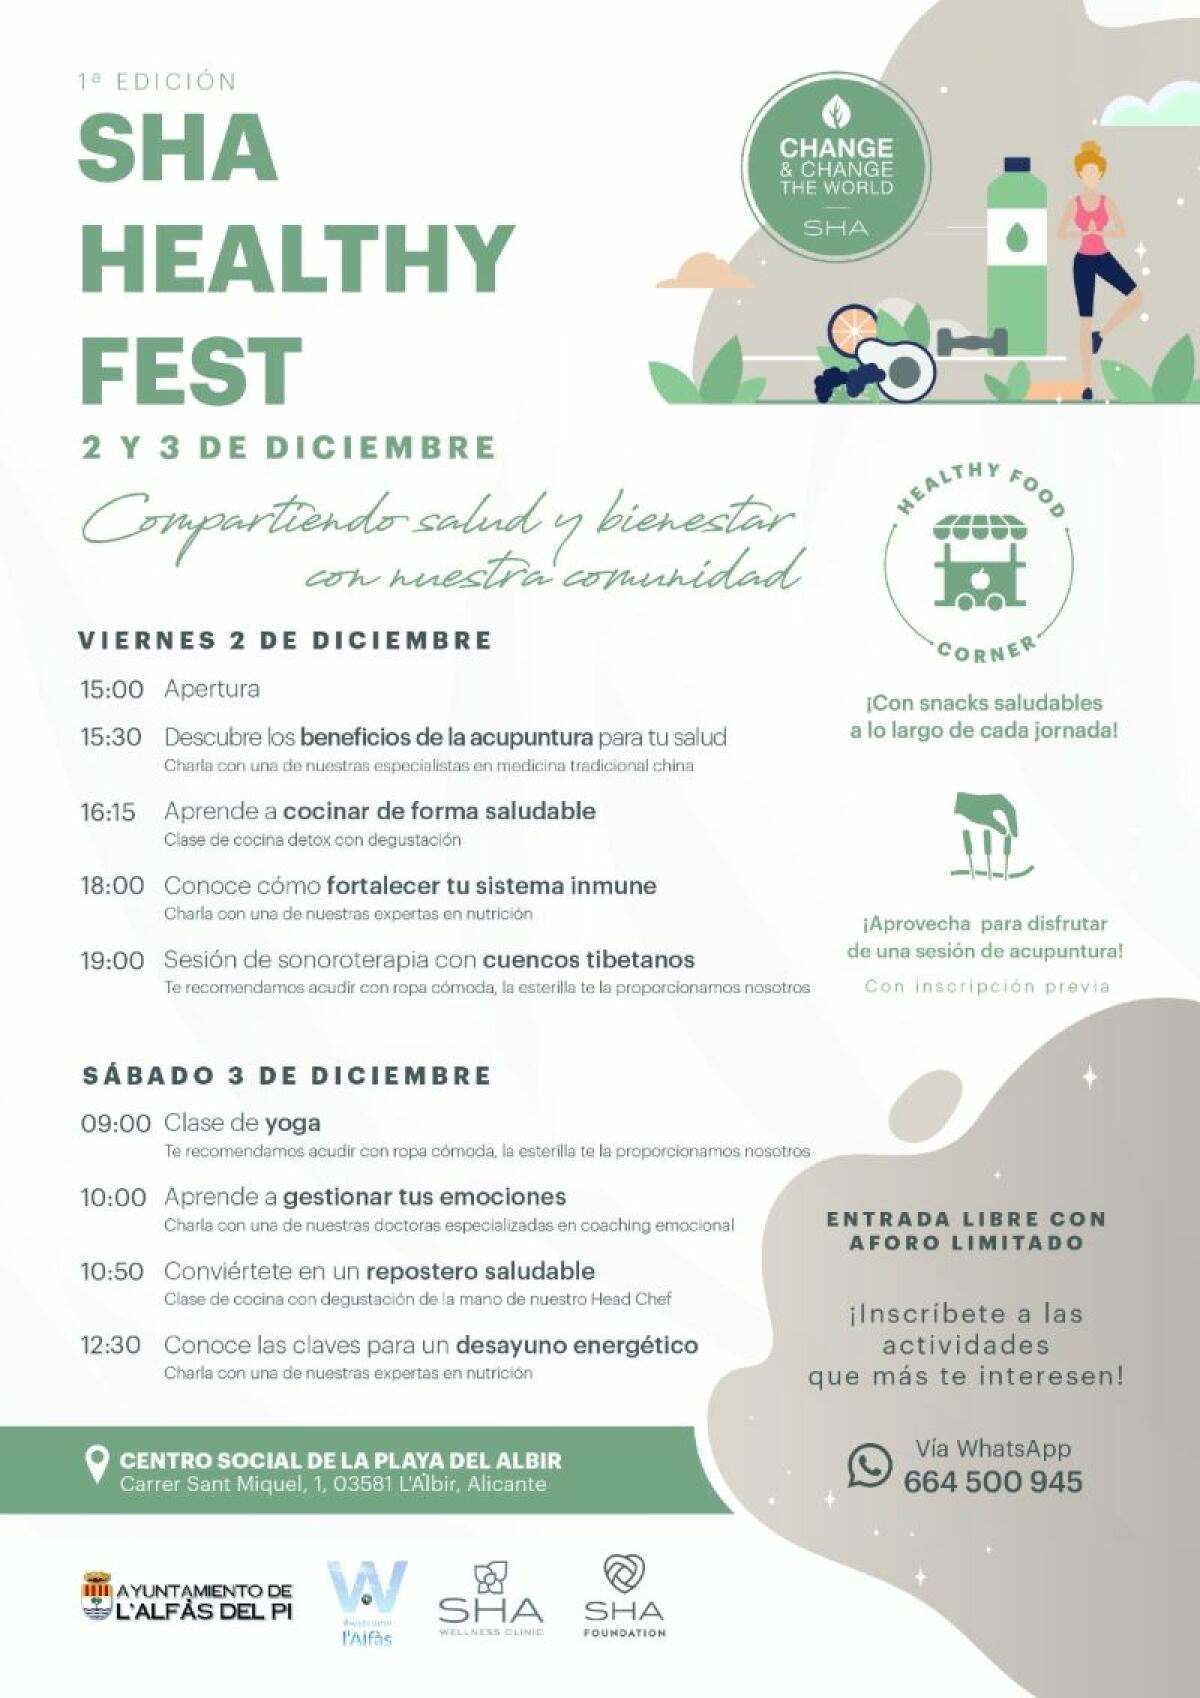 L’Alfàs del Pi acoge la 1ª edición del SHA Healthy Fest los próximos 2 y 3 de diciembre